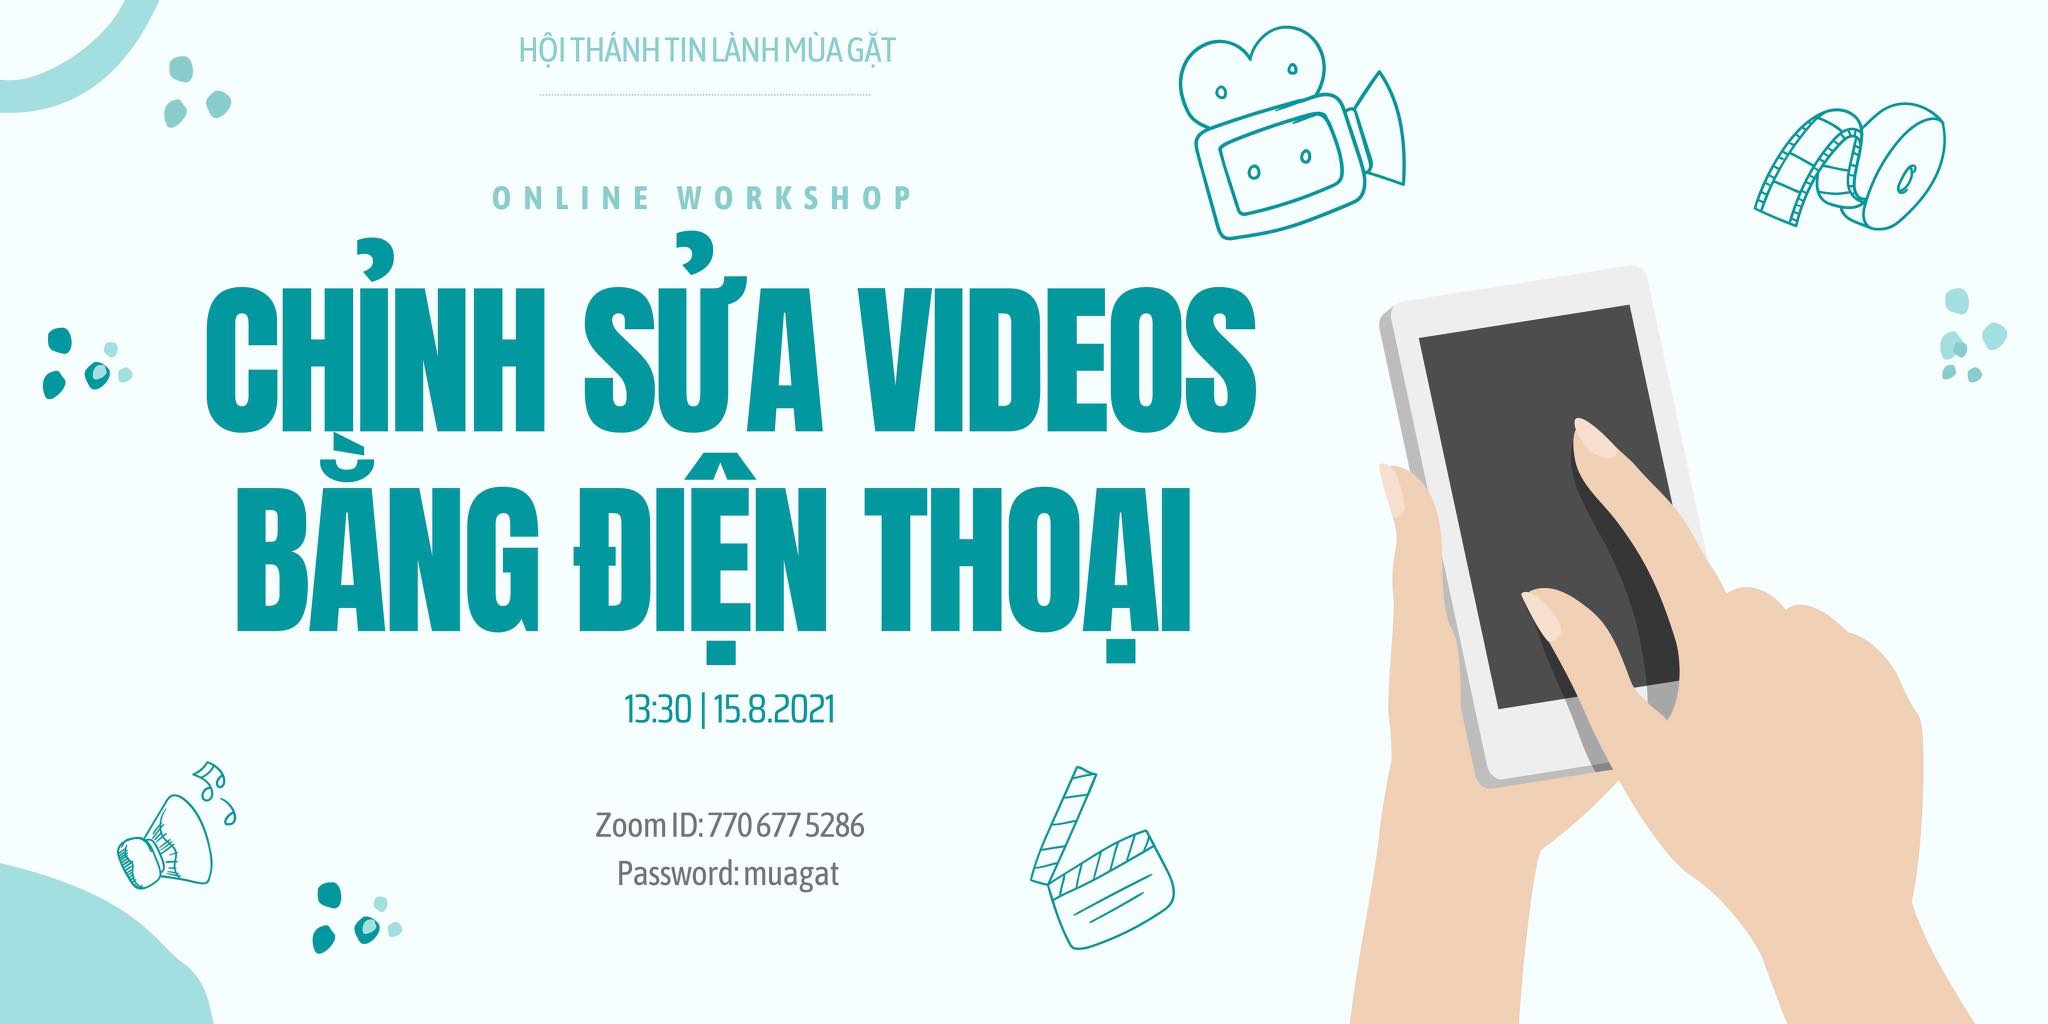 Online Workshop: Chỉnh Sửa Videos Bằng Điện Thoại